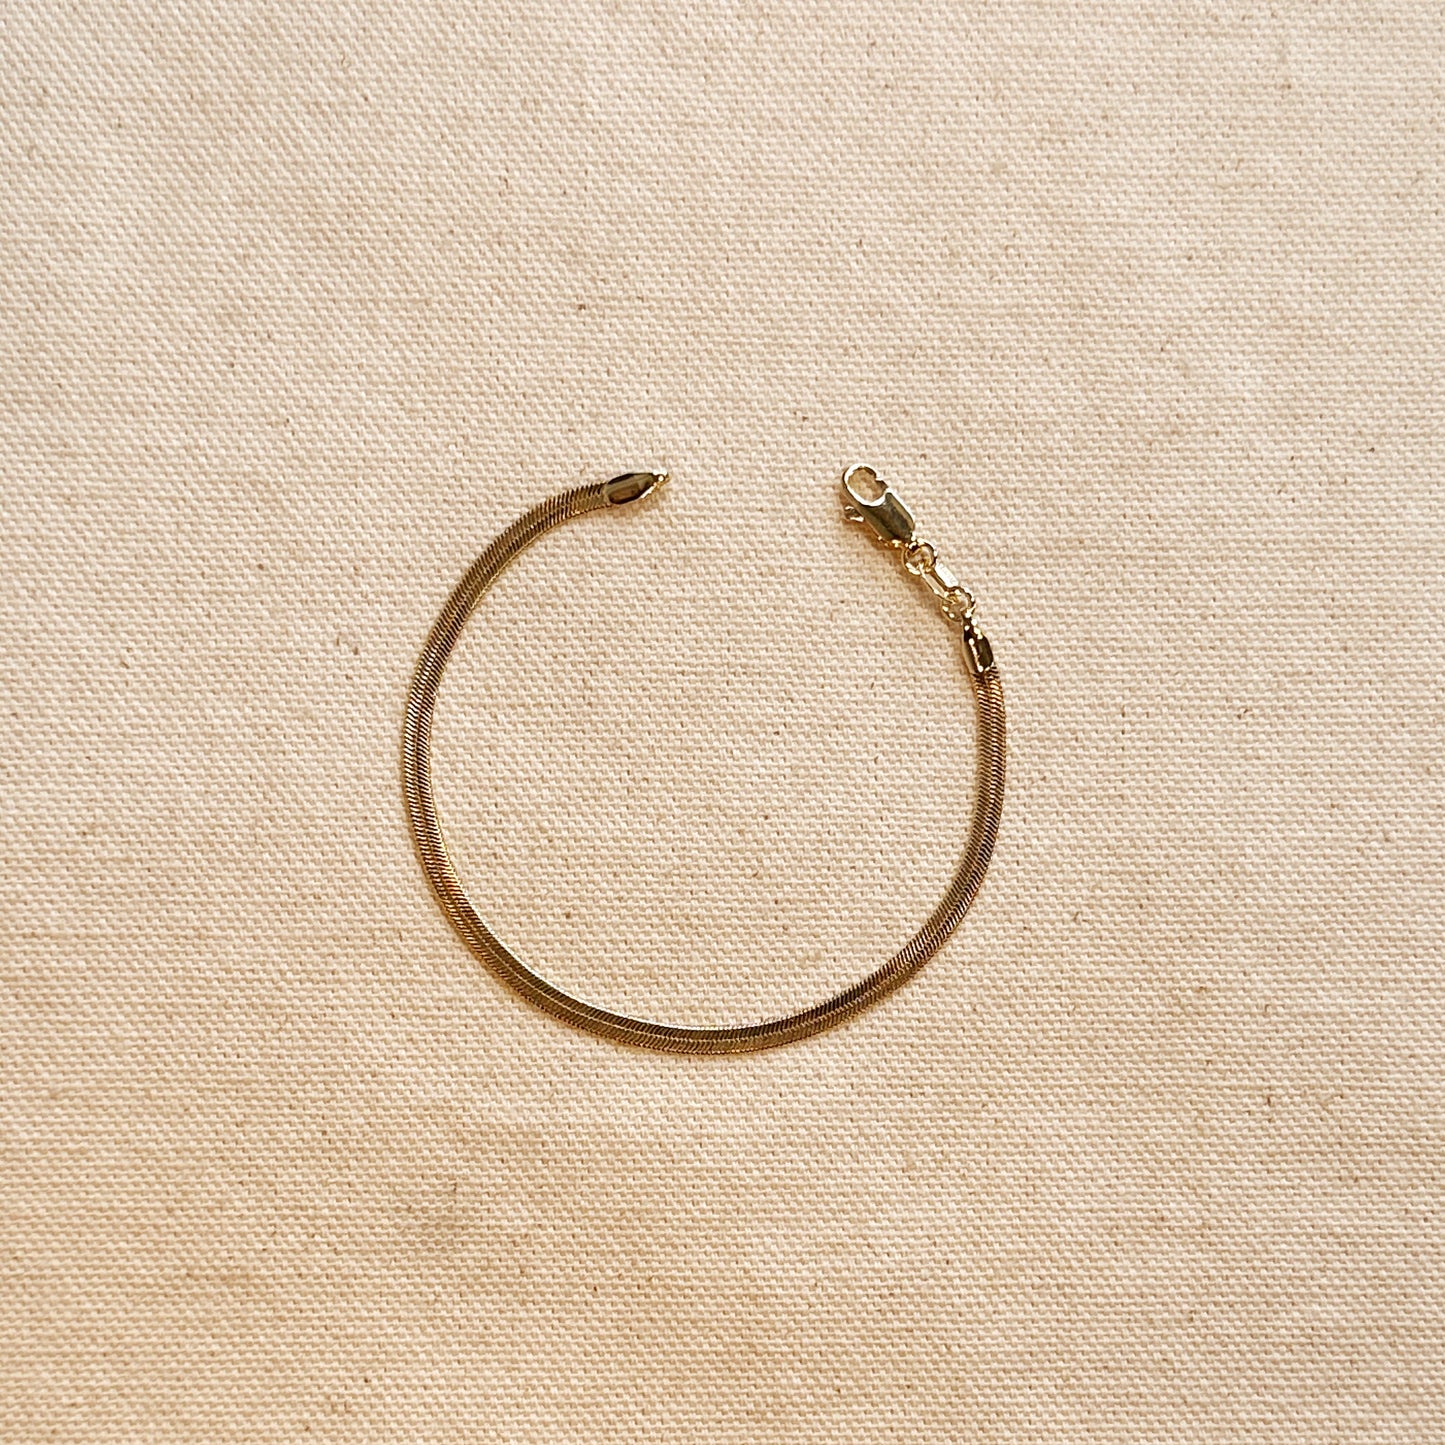 18k Gold Filled 3.0mm Thickness Herringbone Bracelet